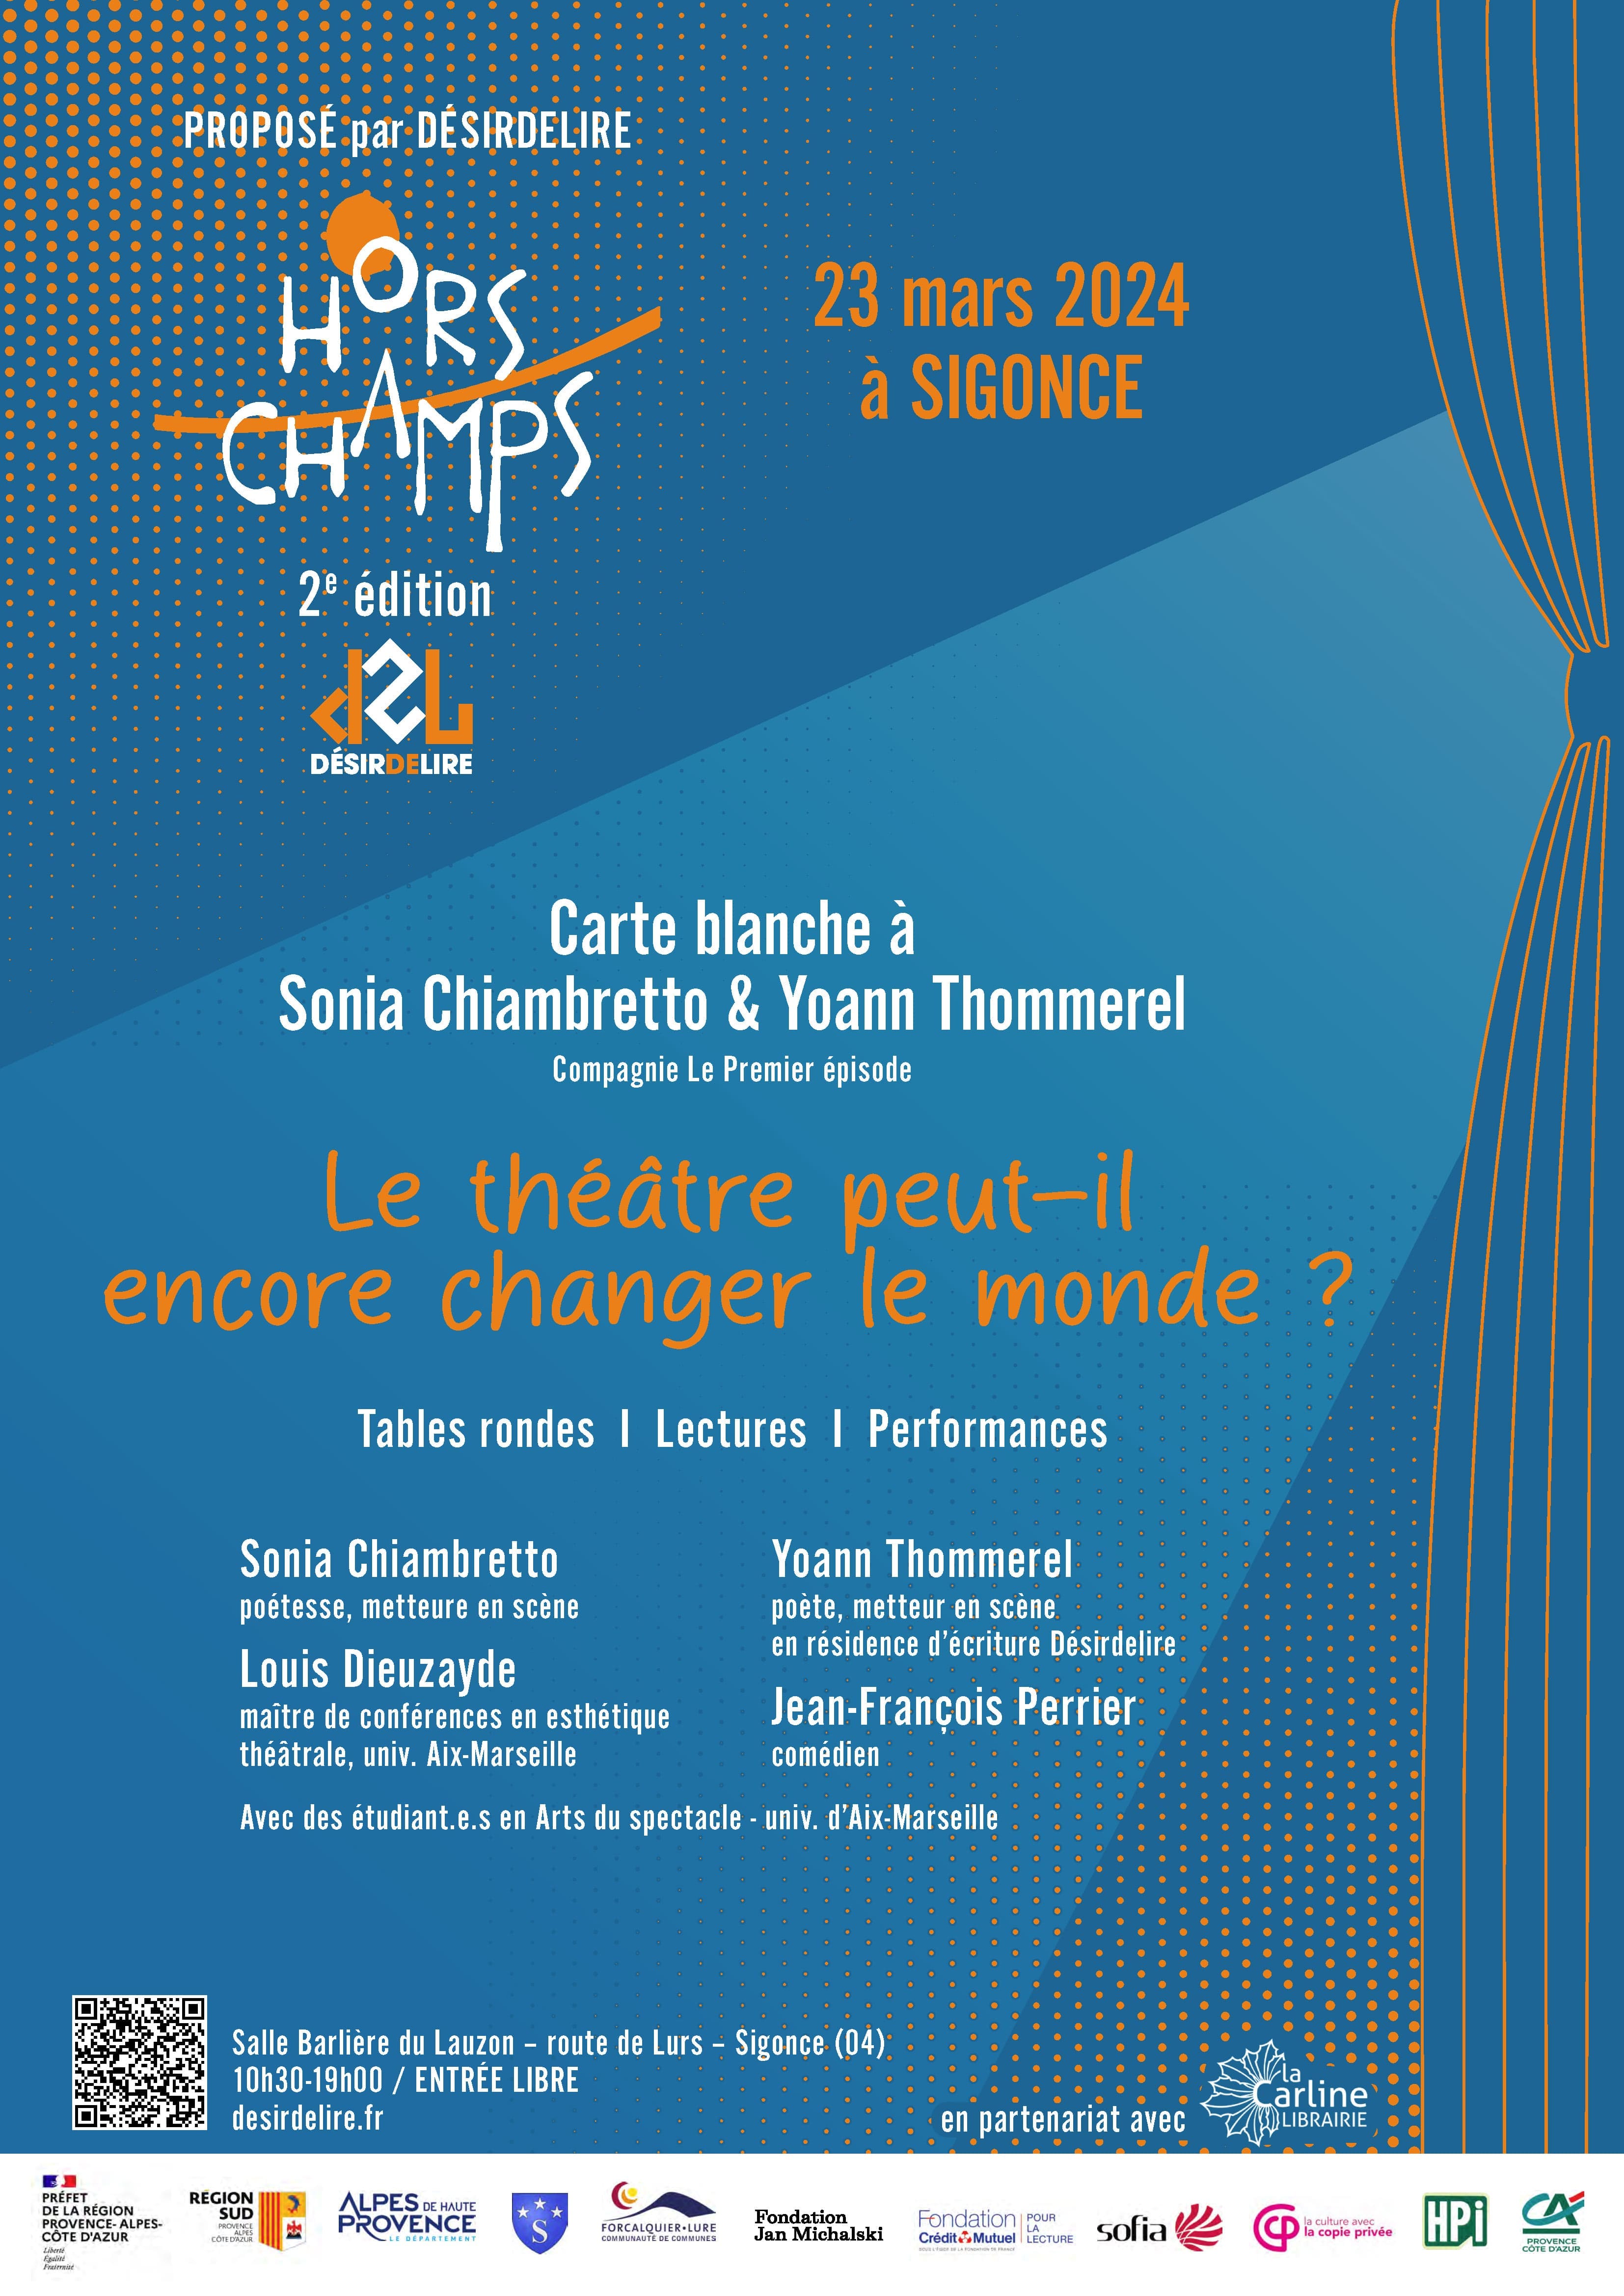 le 23 mars 2024 - Festival de littérature " HORS-CHAMPS " à Sigonce 